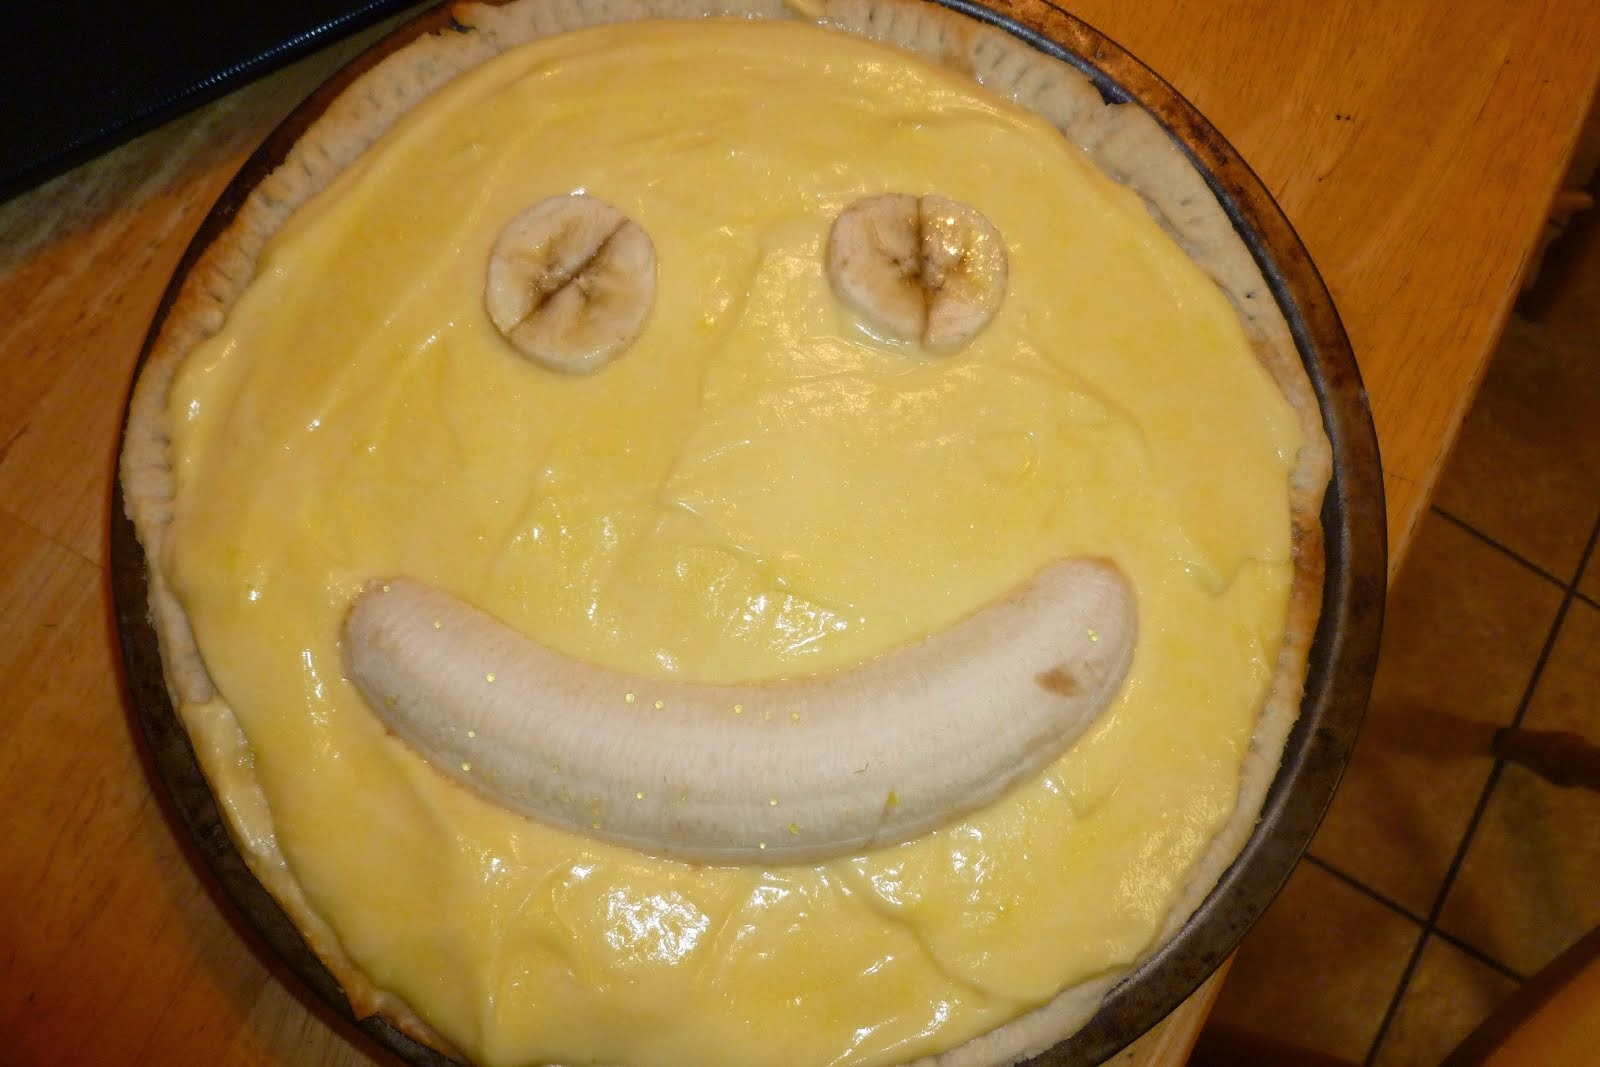 Josh's banana pie